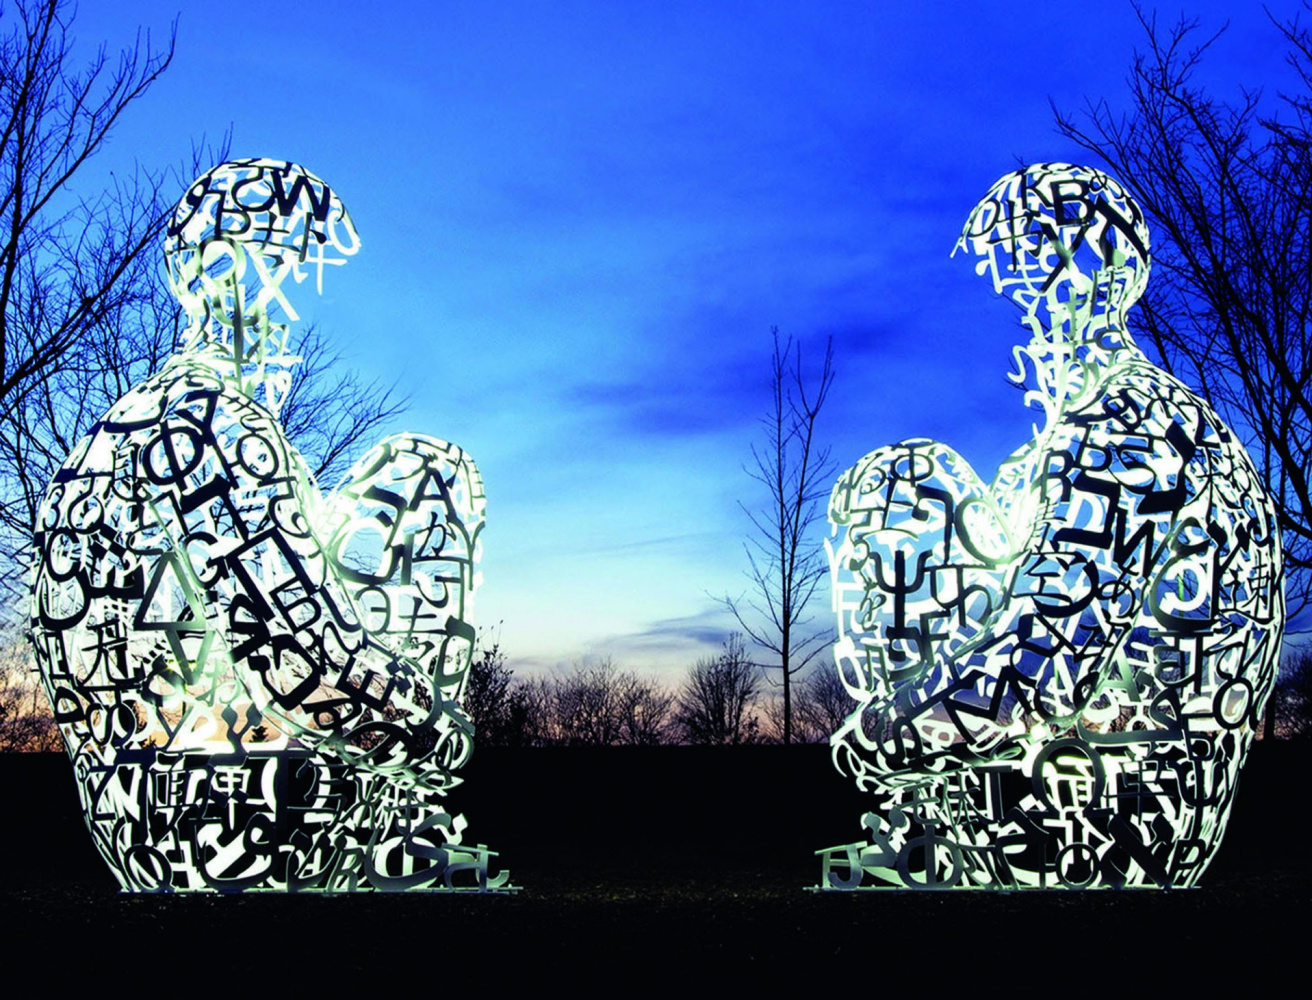 Жауме Пленса: «Скульптуры — это лучший способ задать вопрос»